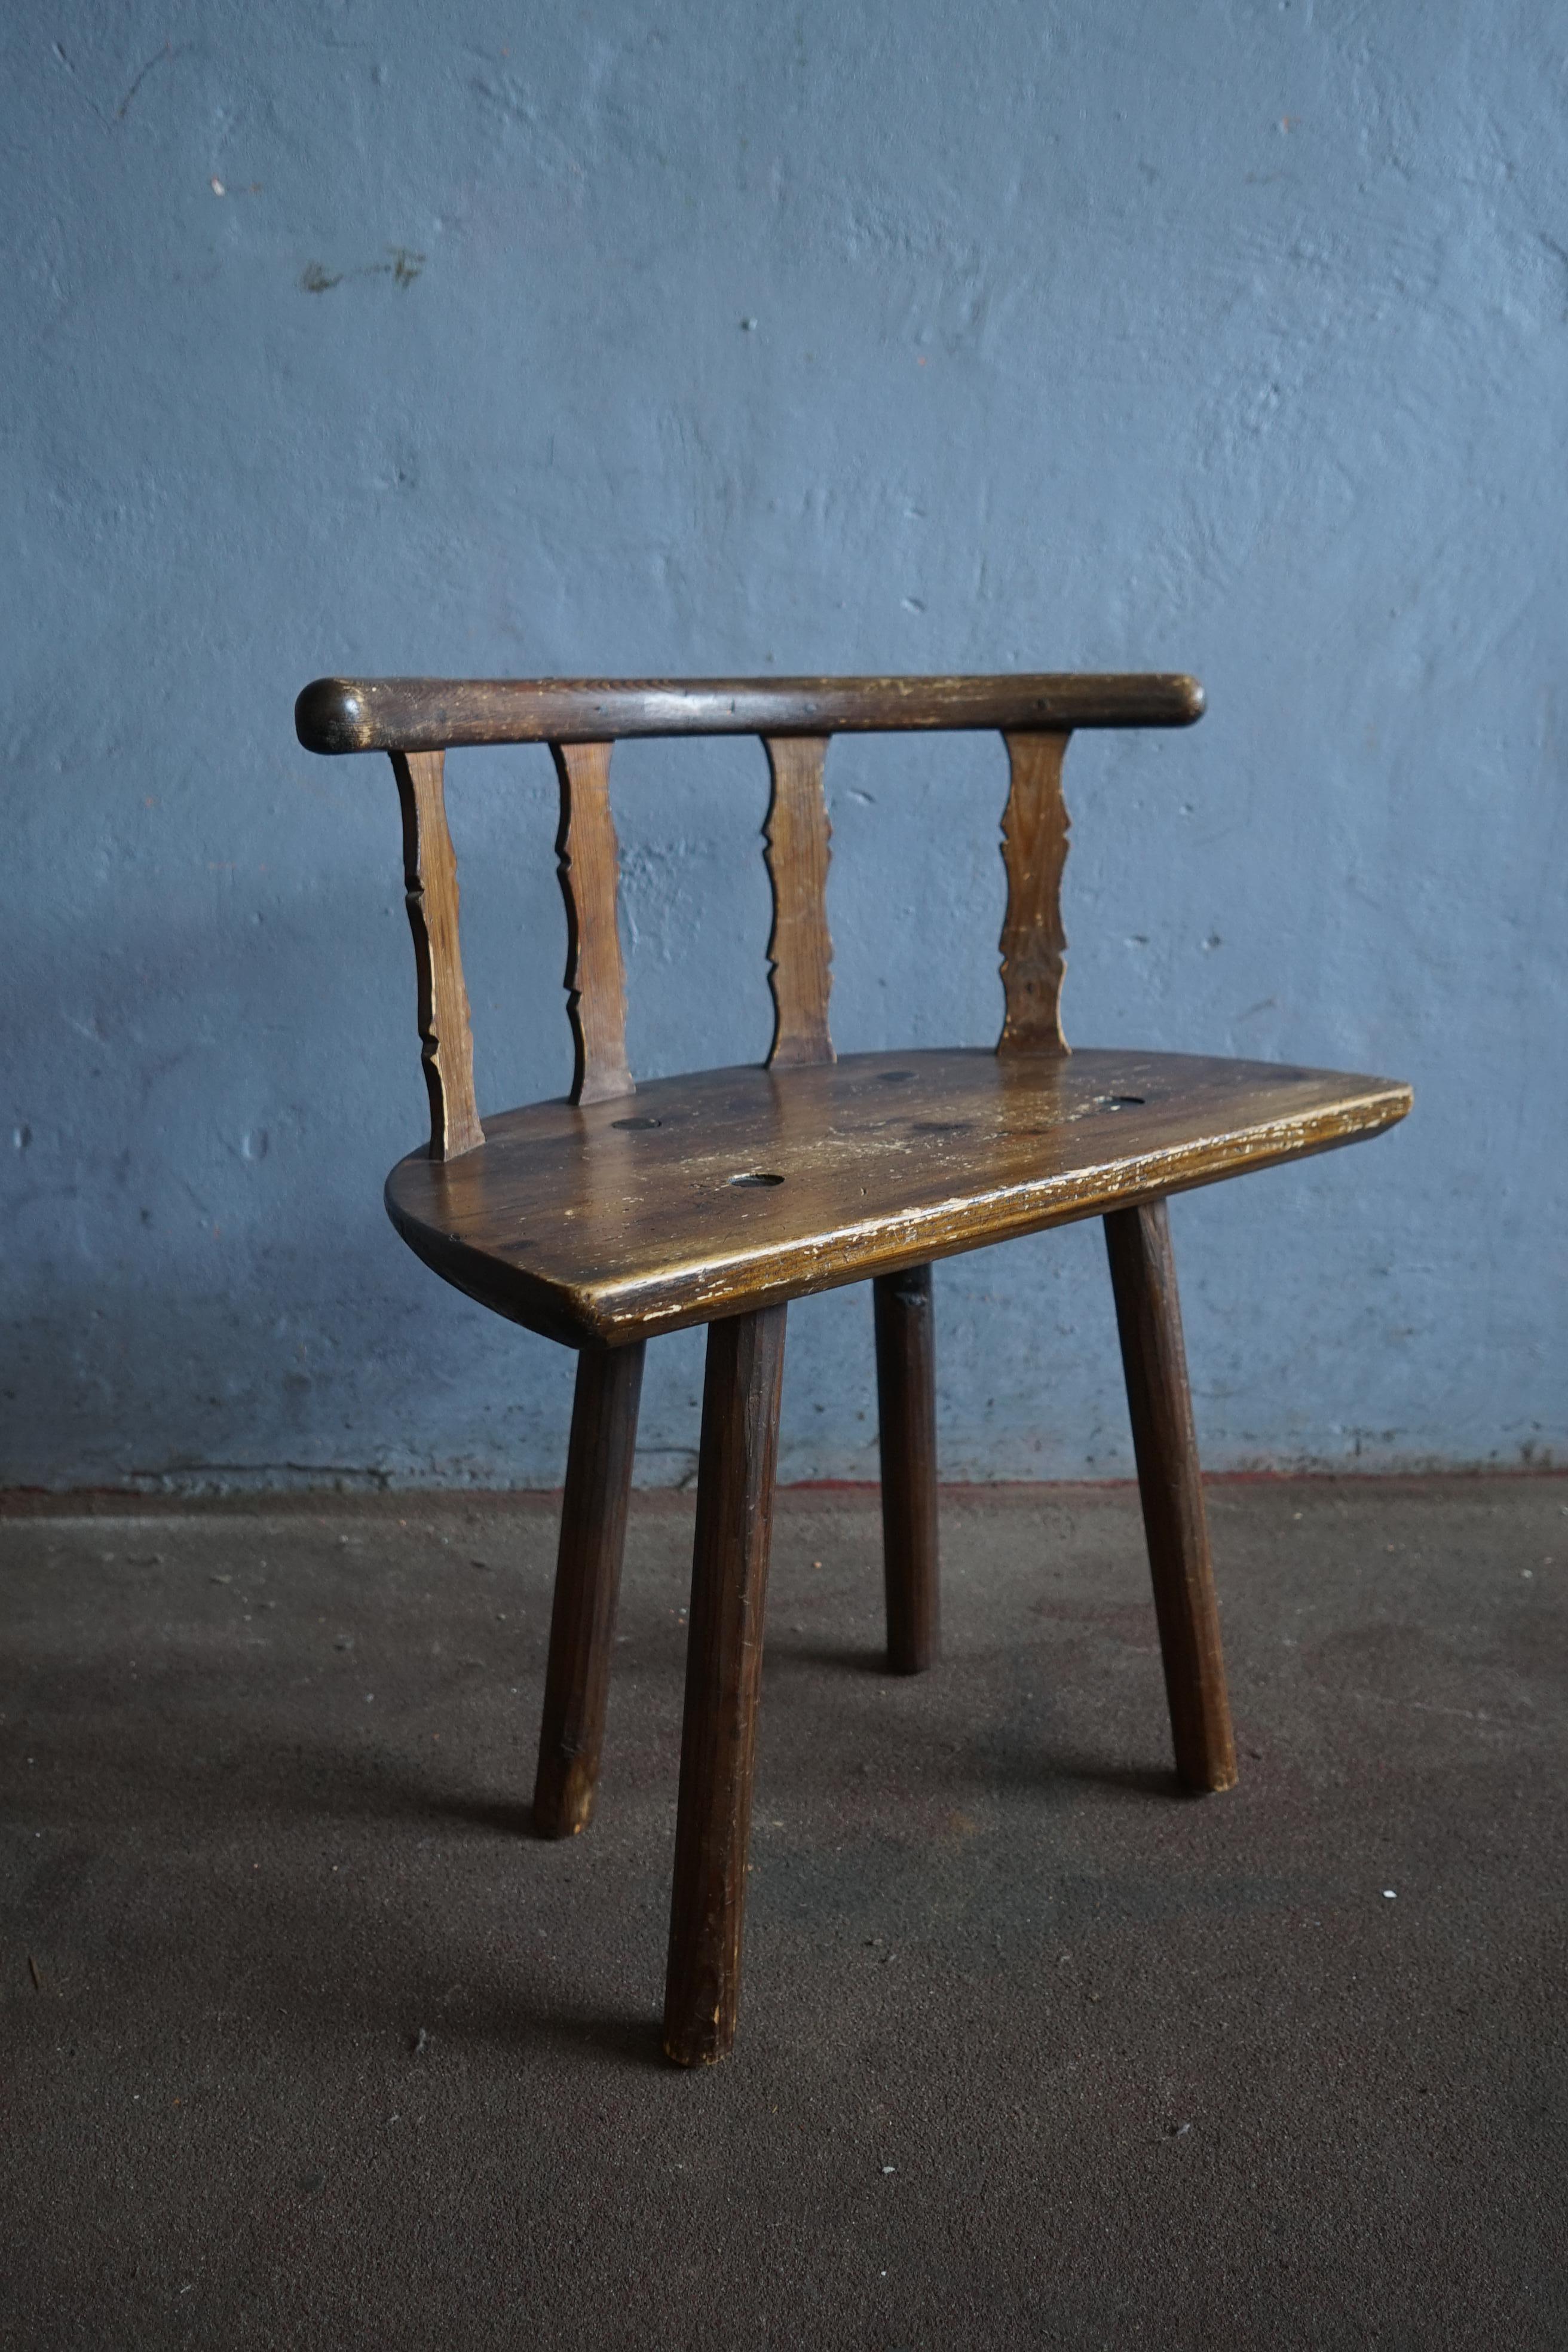 Rare chaise d'art populaire suédois en bois massif teinté foncé, fabriquée par un artisan très talentueux au milieu du 19e siècle en Suède.

La chaise présente de beaux détails comme les joints visibles au niveau de l'assise et du dossier.

La